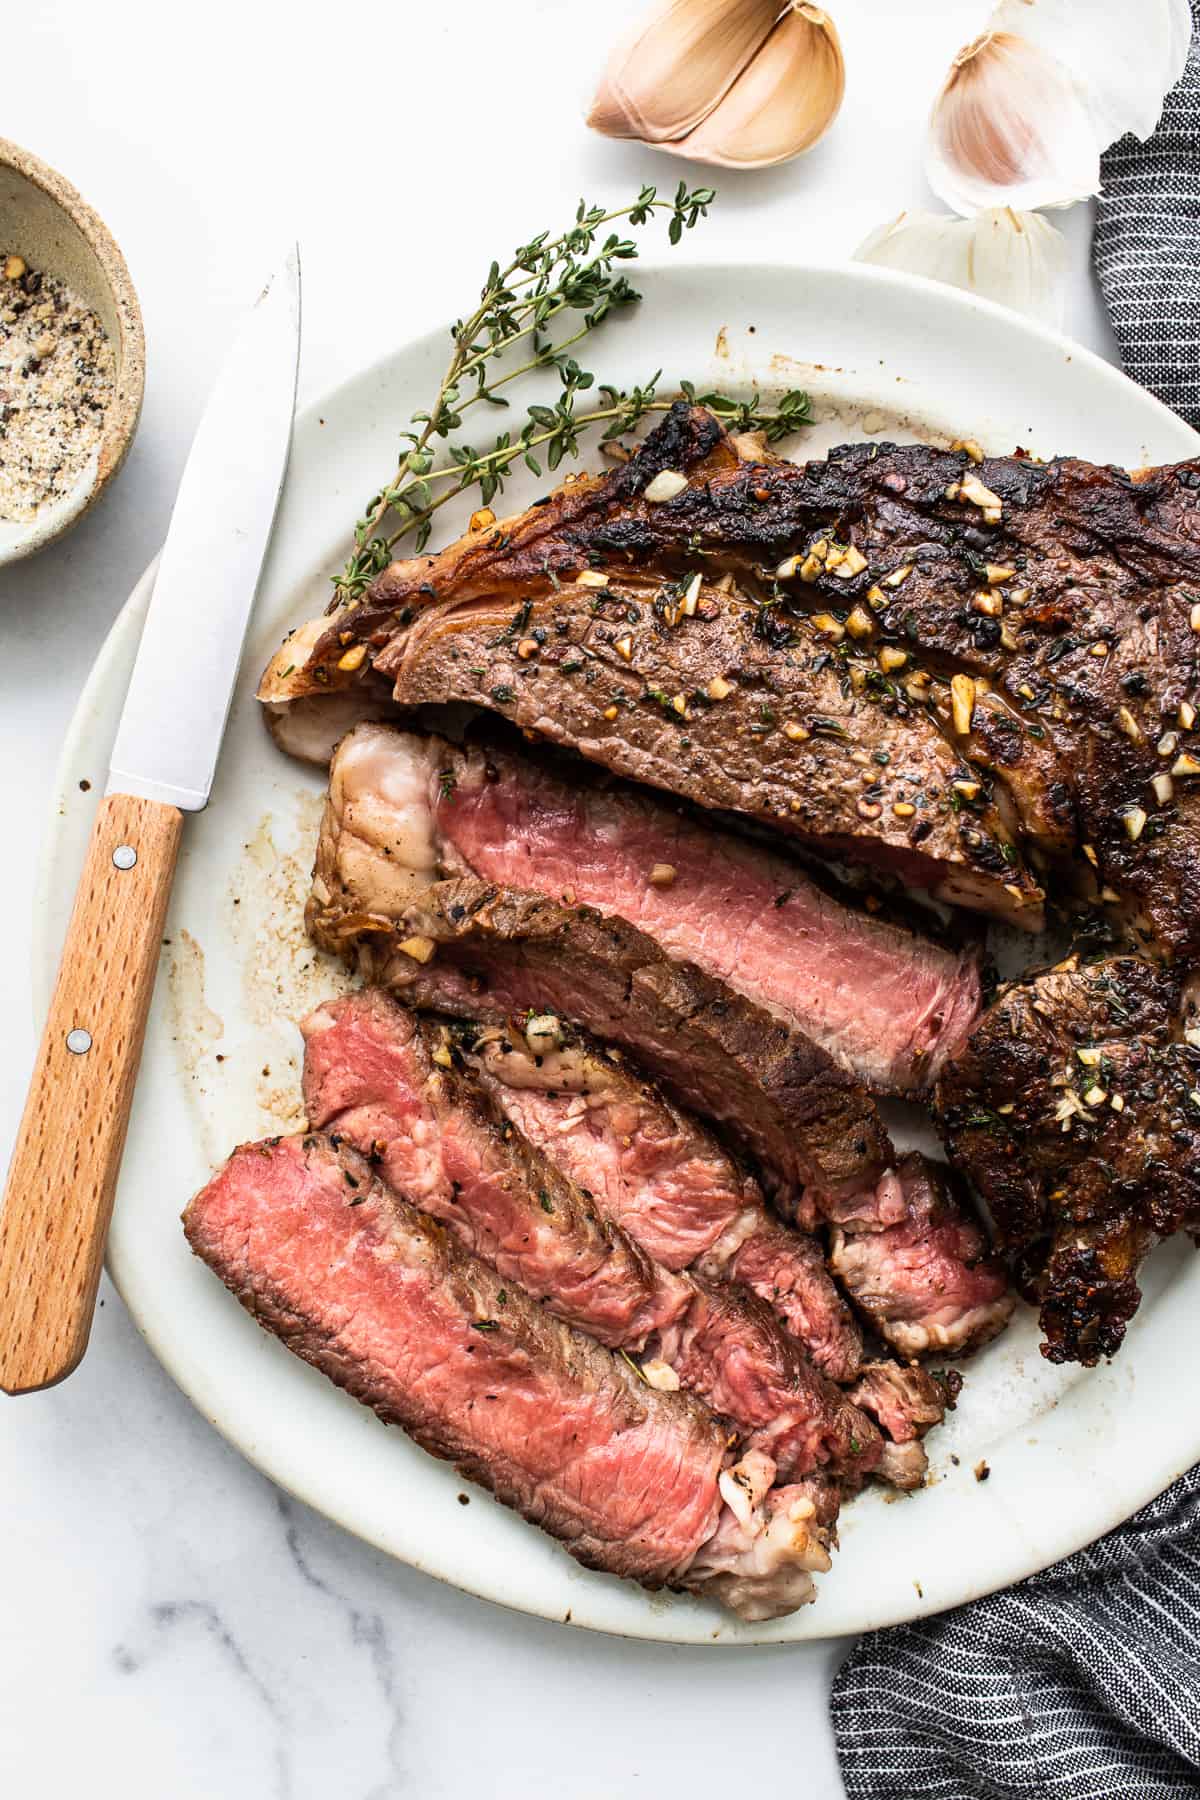 Sliced seasoned steak on a plate.